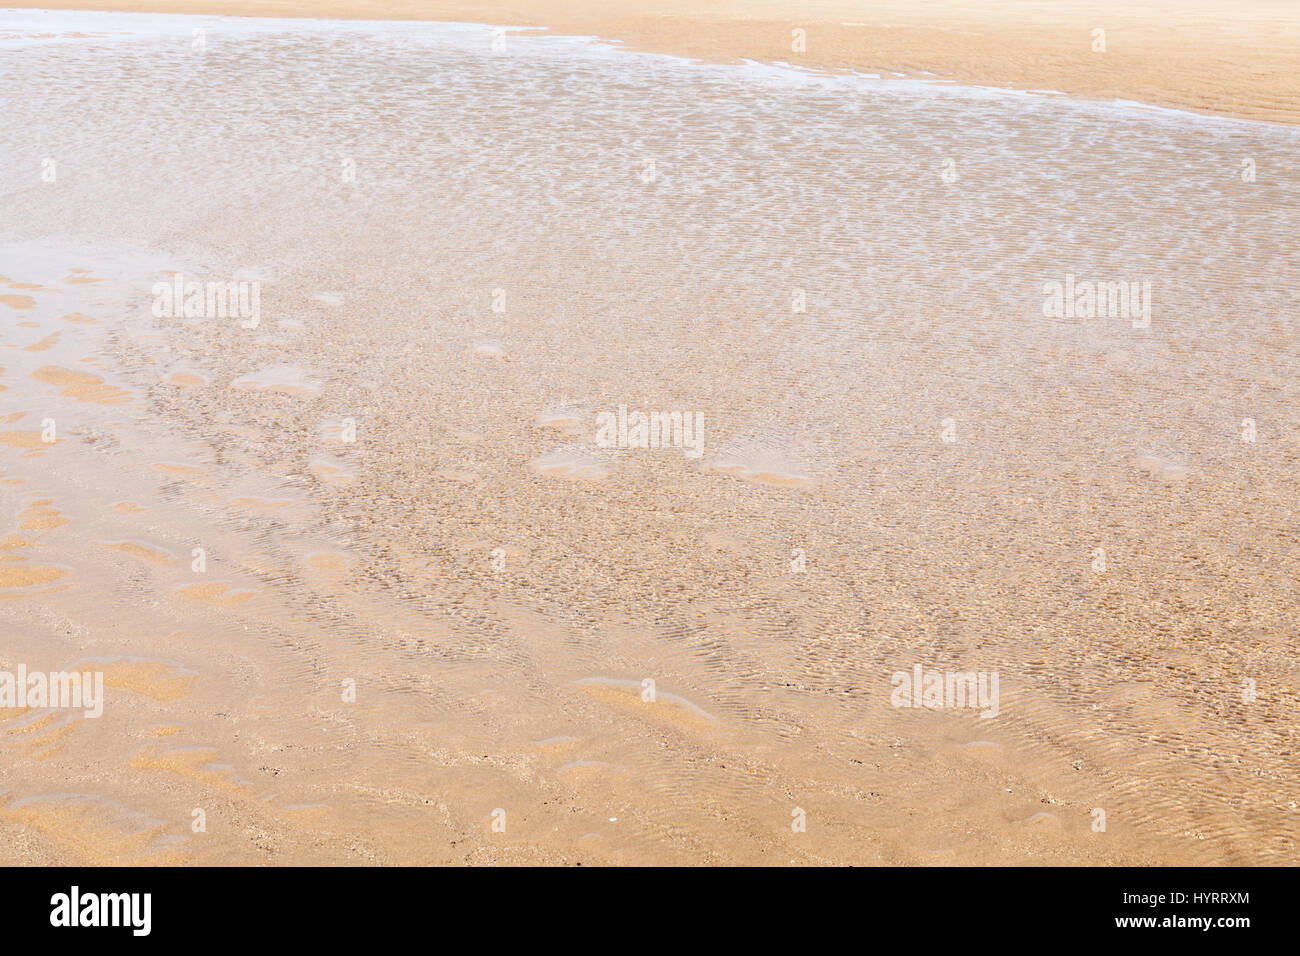 Water's Edge. Flache Meerwasser in der Brise wehen auf der Küstenlinie von einem Sandstrand. Blick vom Meer auf den Sand, England, Großbritannien Stockfoto